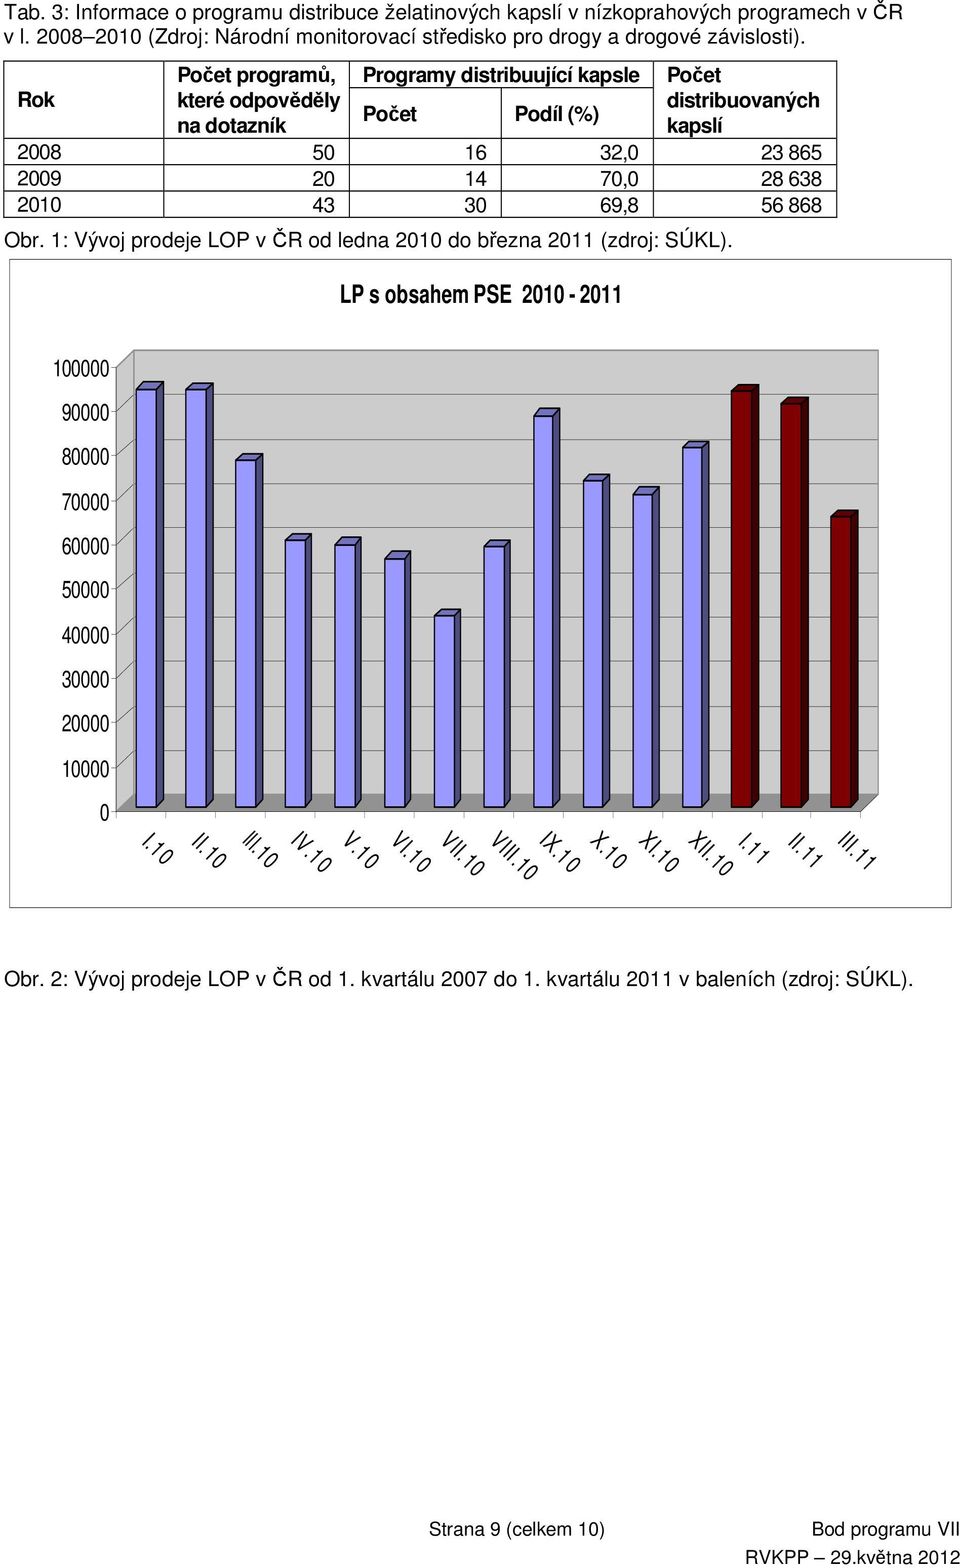 868 Obr. 1: Vývoj prodeje LOP v ČR od ledna 2010 do března 2011 (zdroj: SÚKL). LP s obsahem PSE 2010-2011 100000 90000 80000 70000 60000 50000 40000 30000 20000 10000 0 III.11 II.11 I.11 XII.